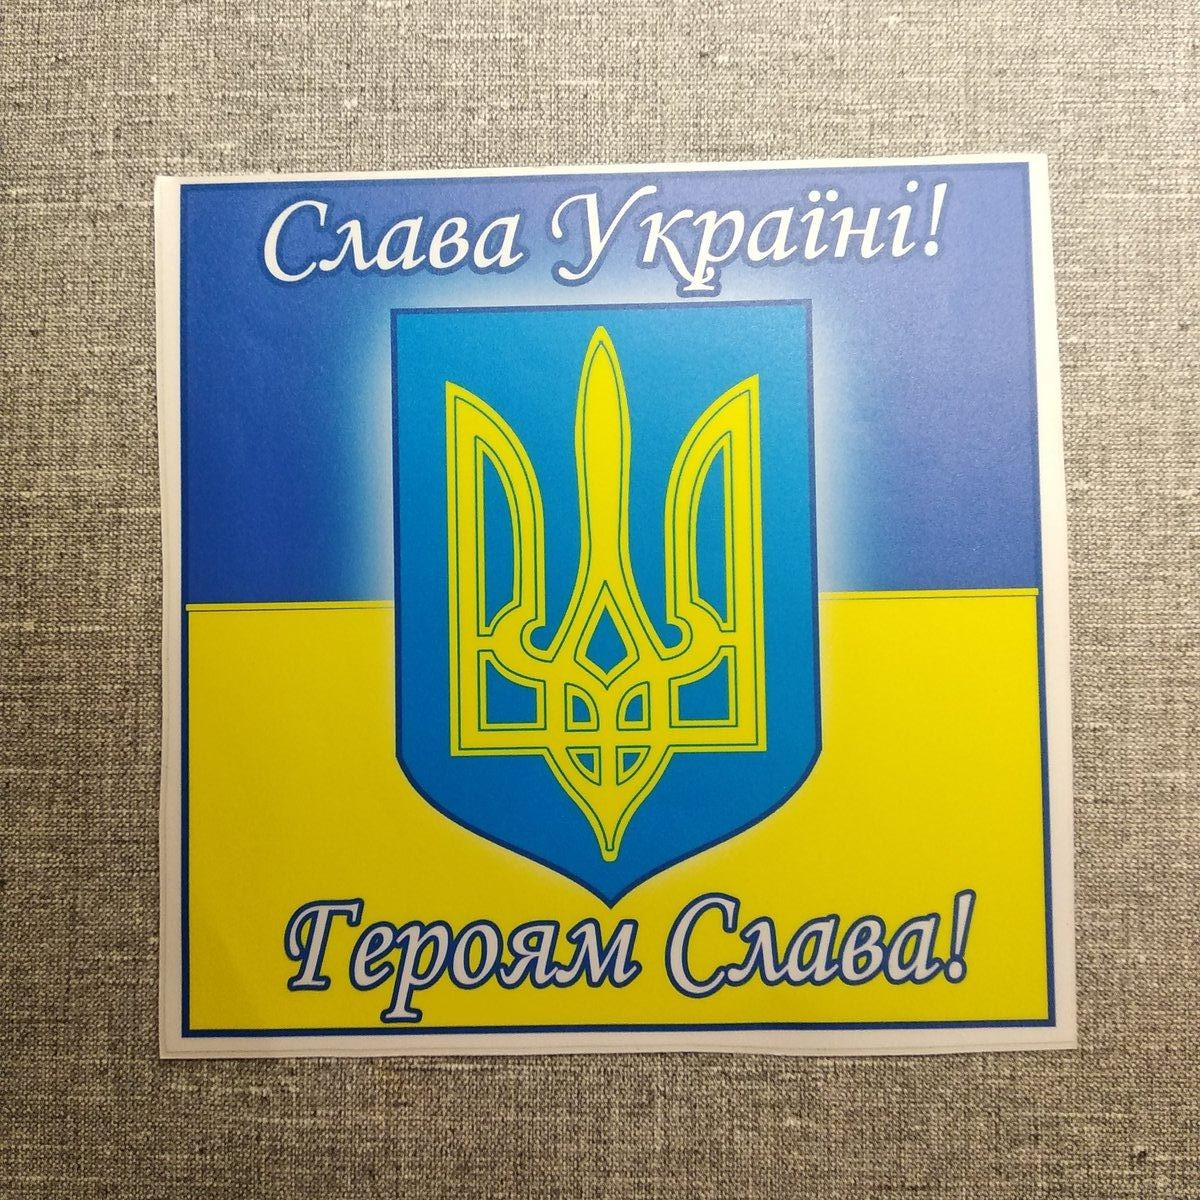 Наклейка на авто "Слава Україні! Героям Слава!"